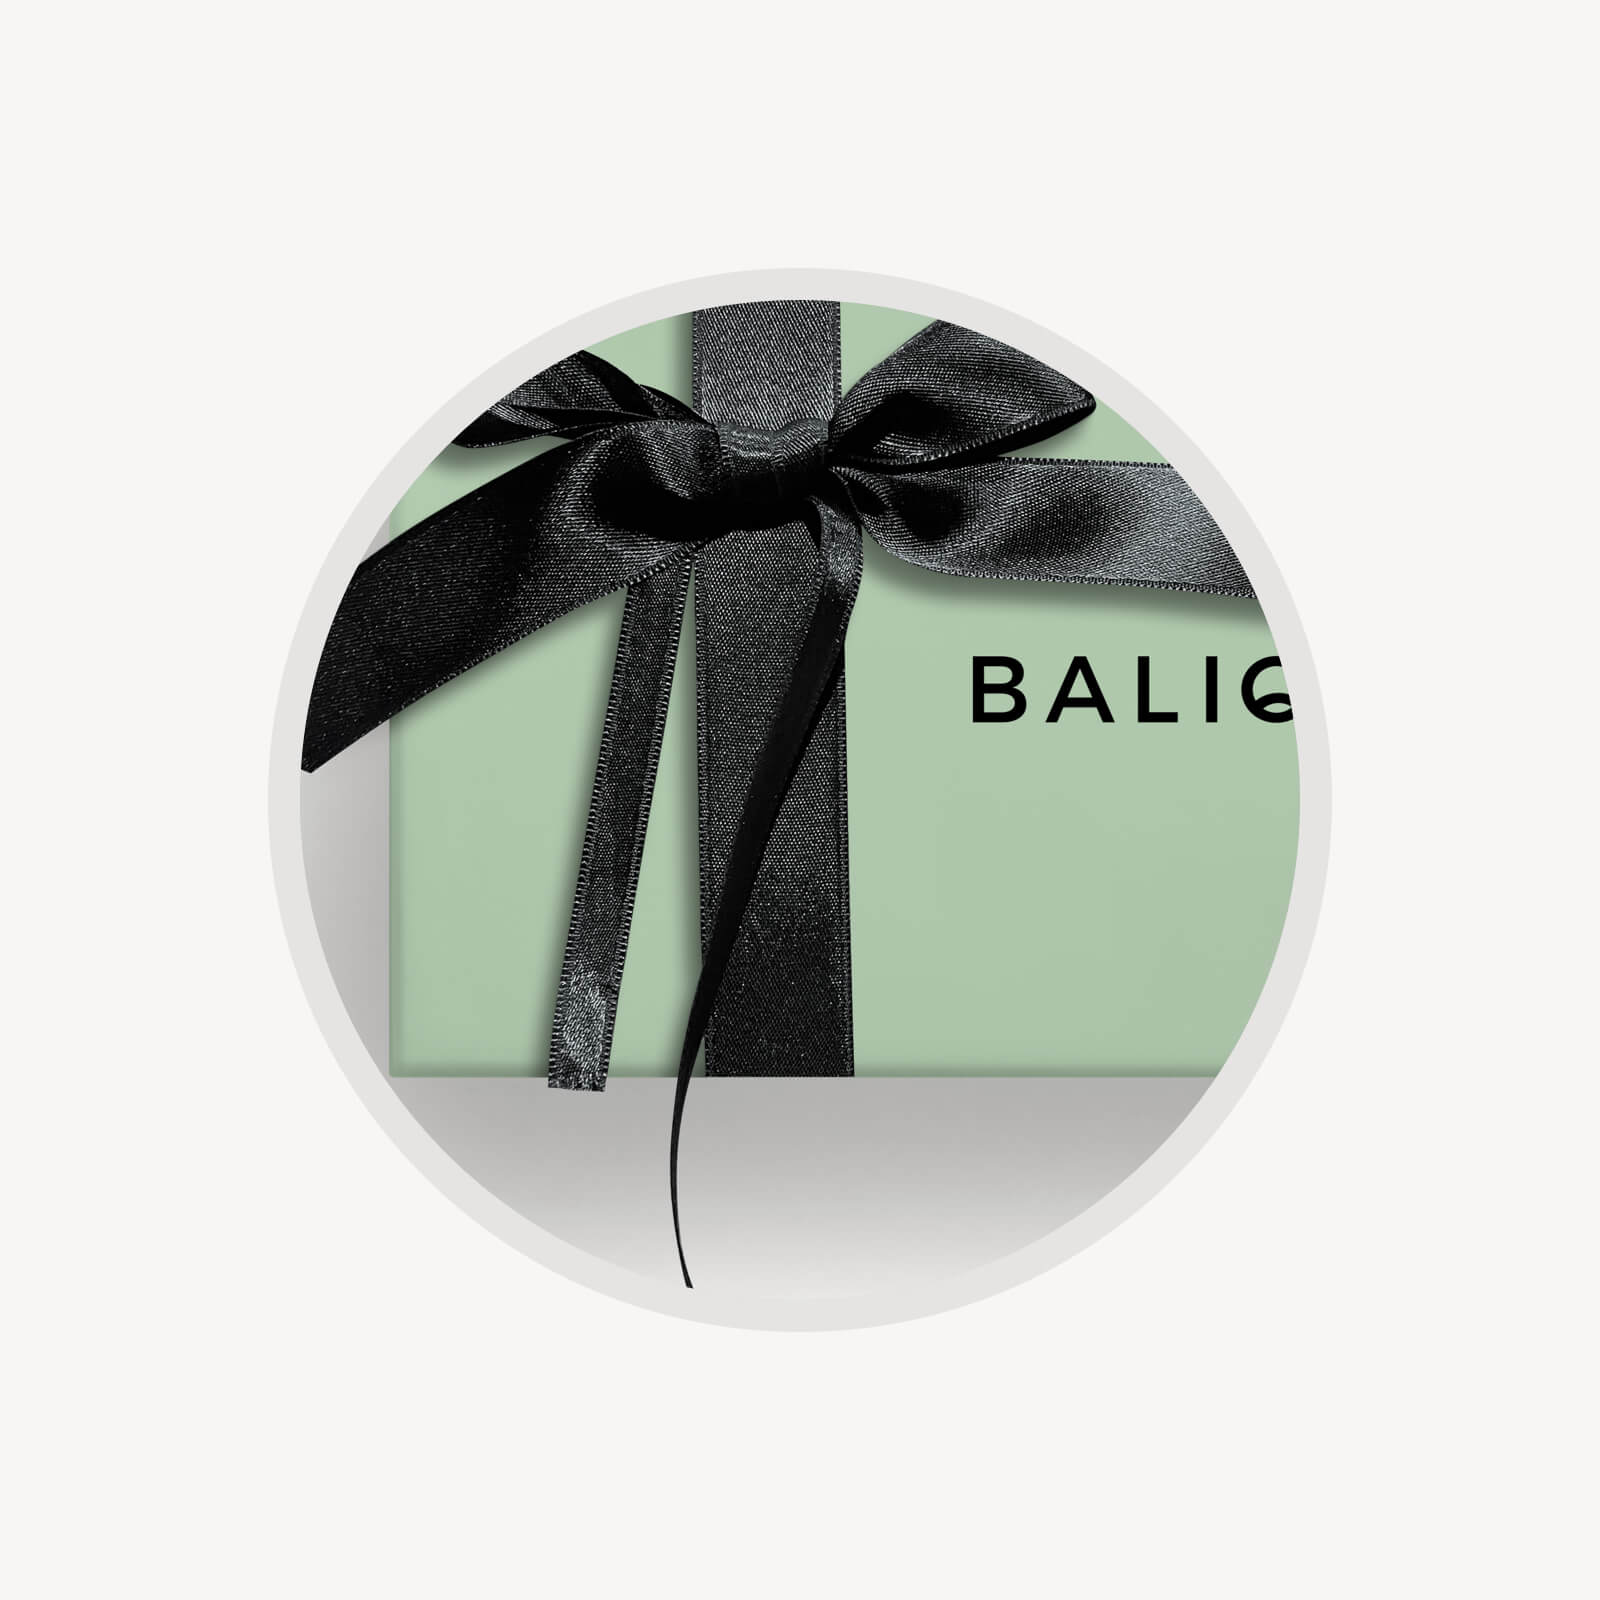 Nastro per Kit Verde o Rosa in raso nero elasticizzato con fiocco — Balique